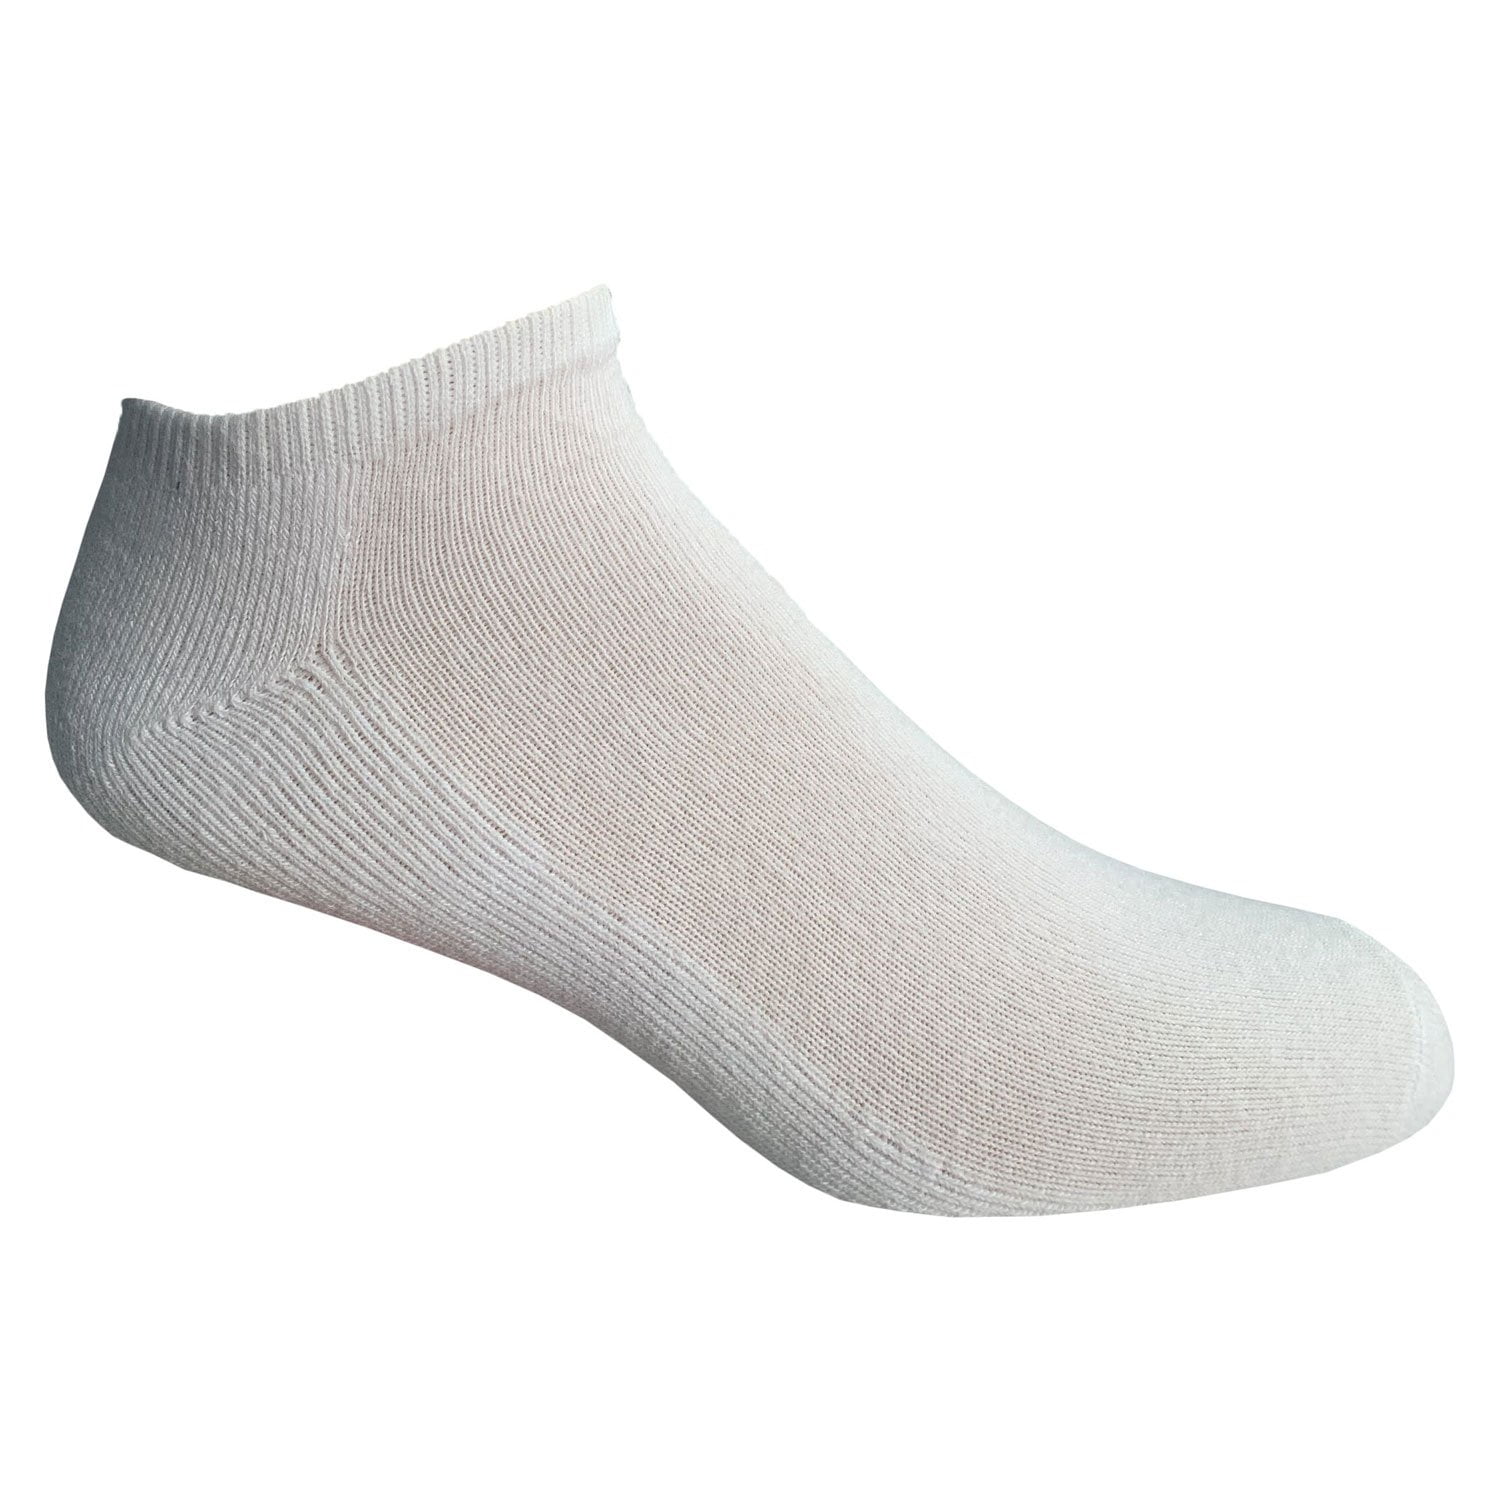 Sports Ankle Socks for Men Women Athletic Trainer Socks Anti Blister Cotton Low Cut Running Socks 6/10 pairs white black grey socks